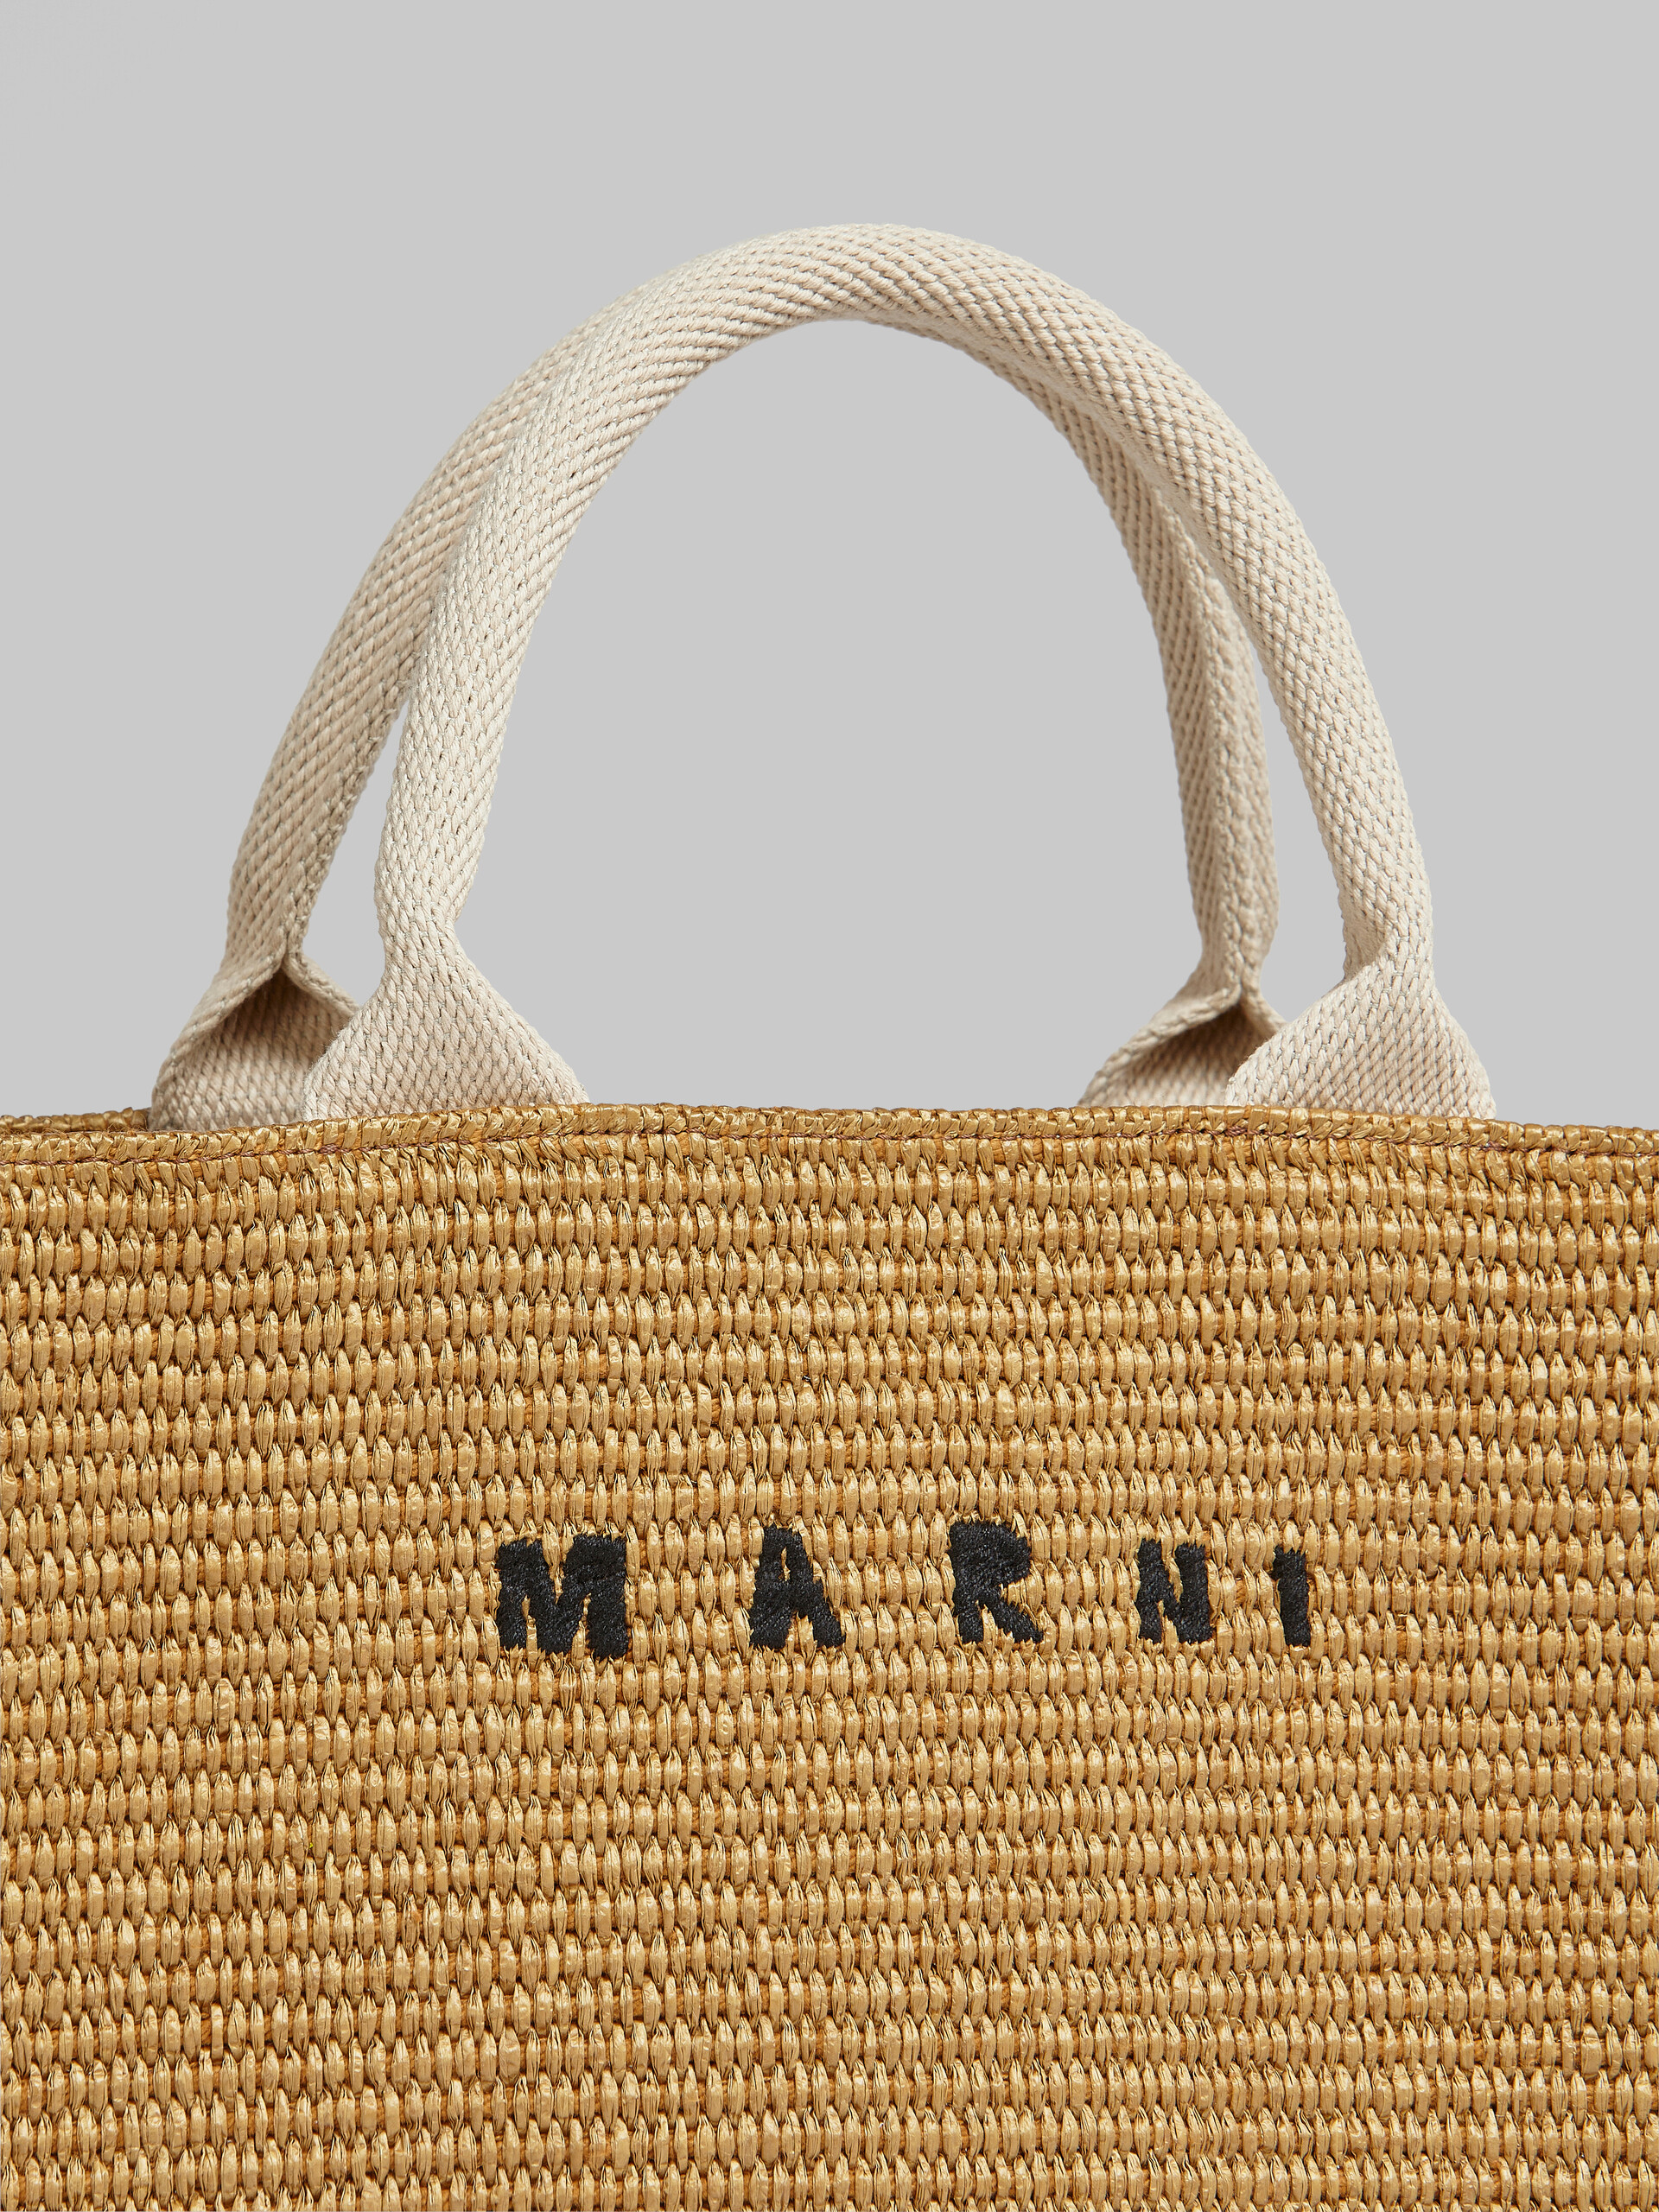 Natural raffia Small Tote Bag - Shopping Bags - Image 5